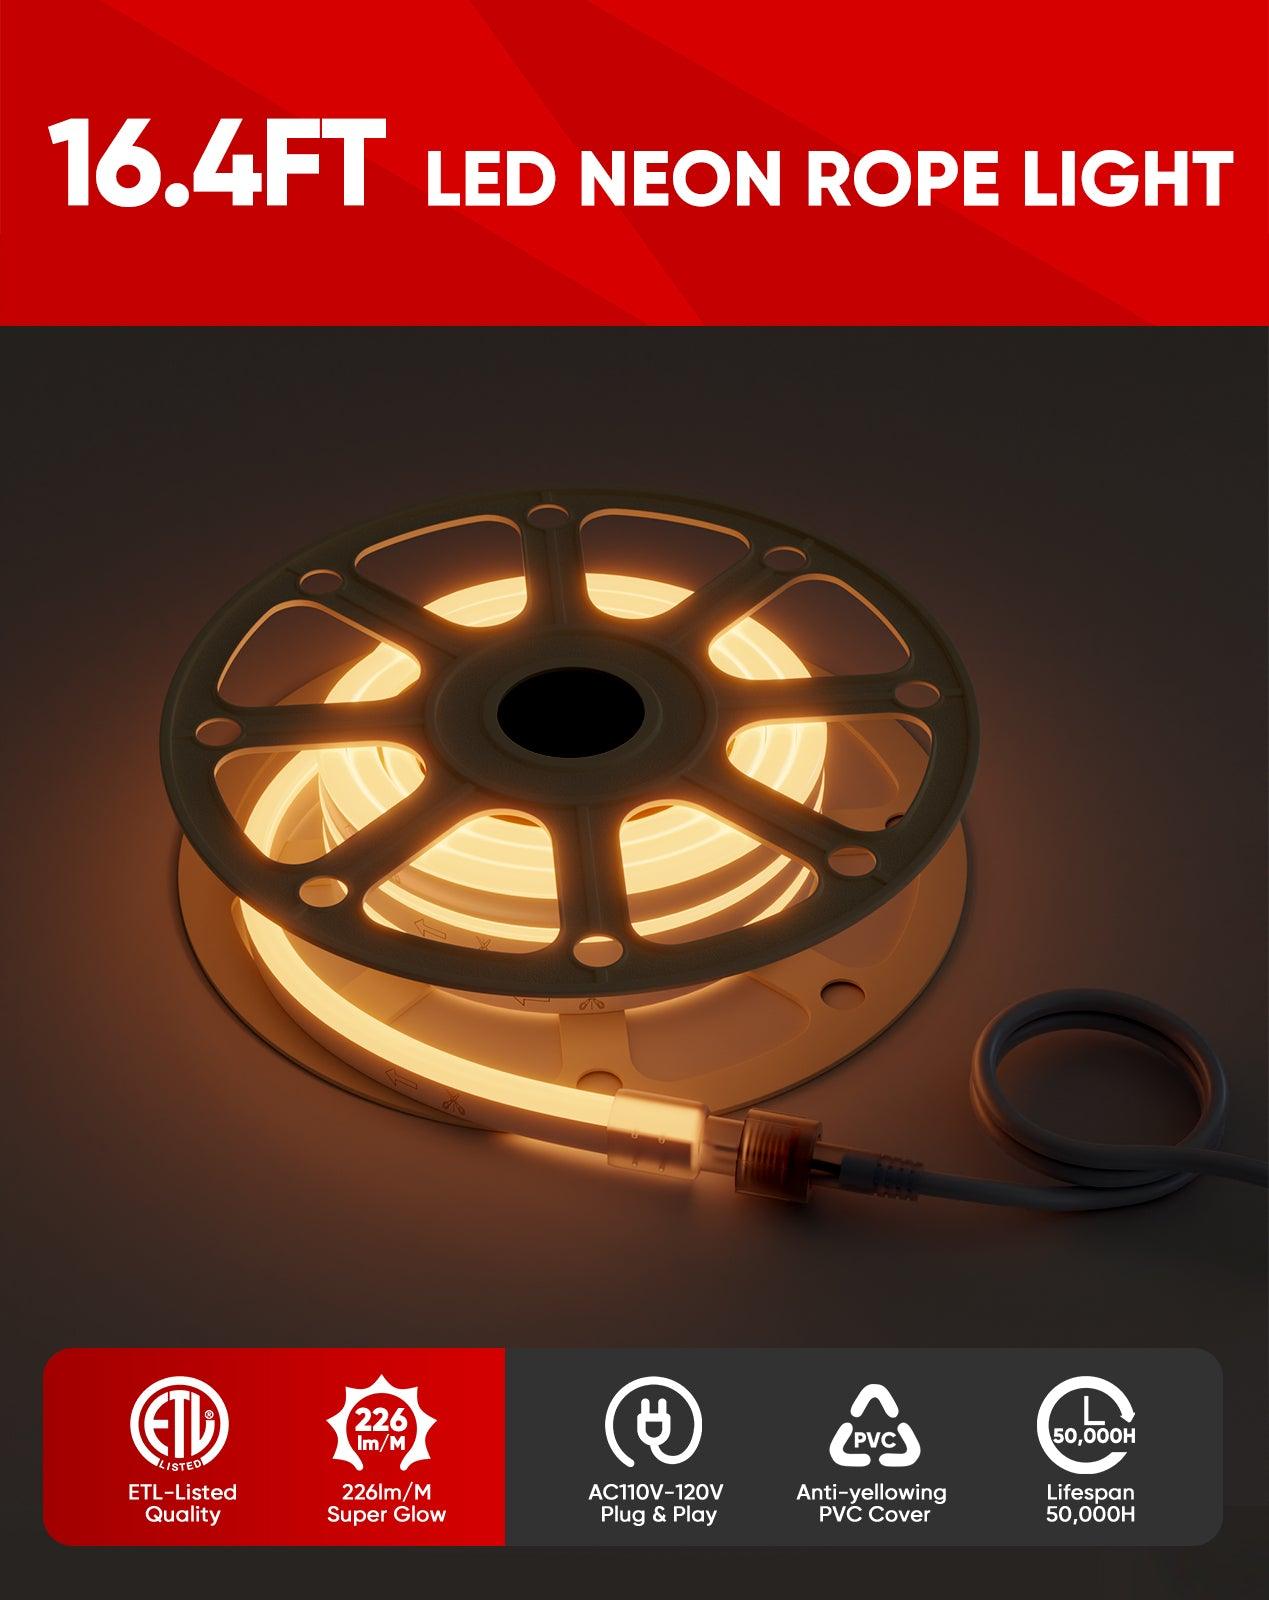 110V Super Bright Lum LED Neon Rope Light 2500K Warm White 226Lumens - Shine Decor